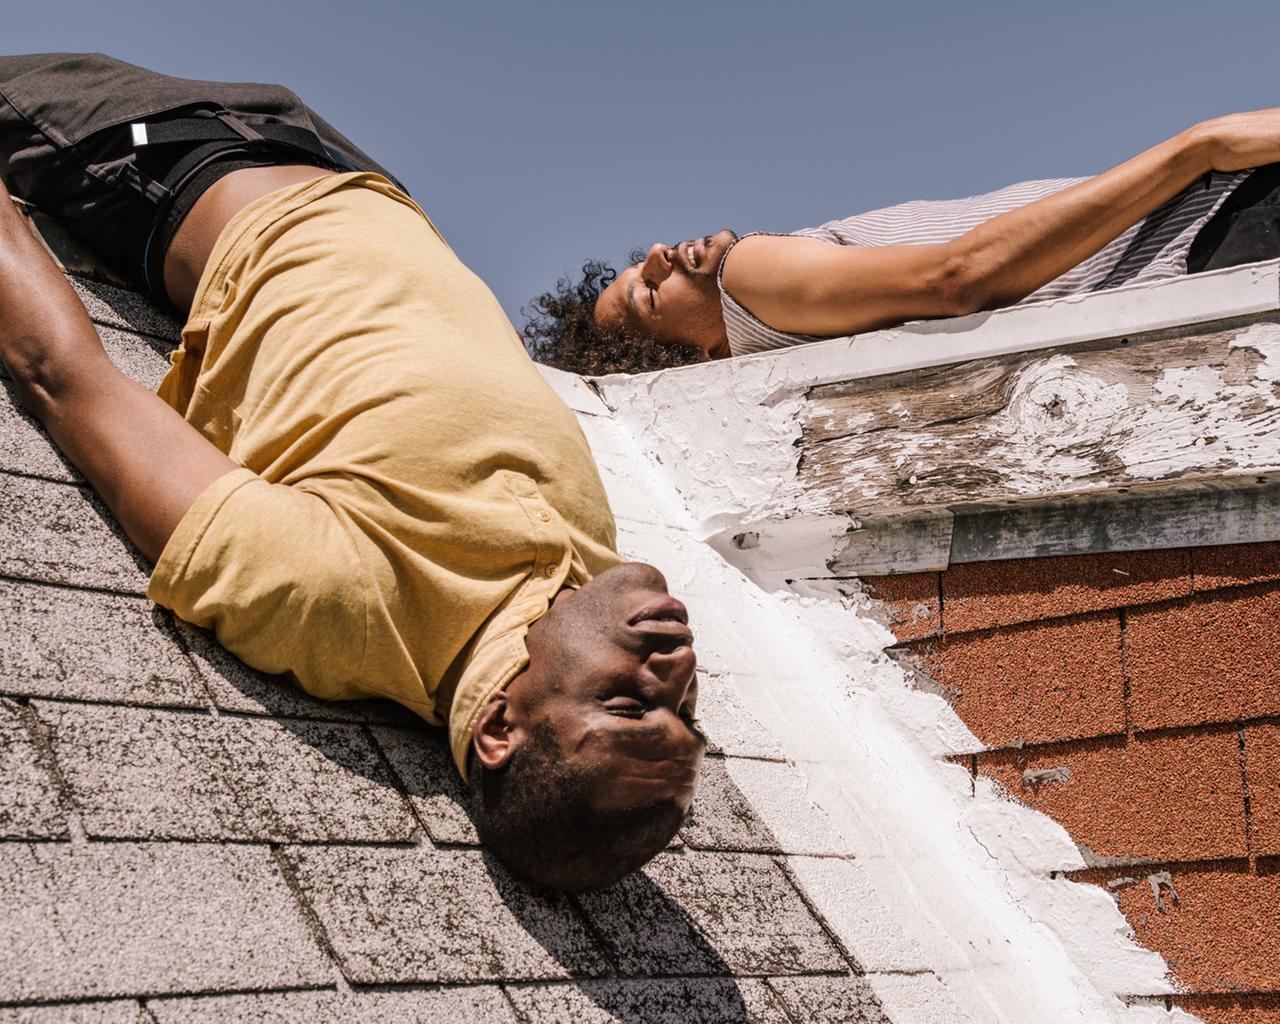 Die beiden Künstler Zachary James Watkins und Marshall Trammell von "Black Spirituals" liegen mit dem Rücken auf Dachschrägen